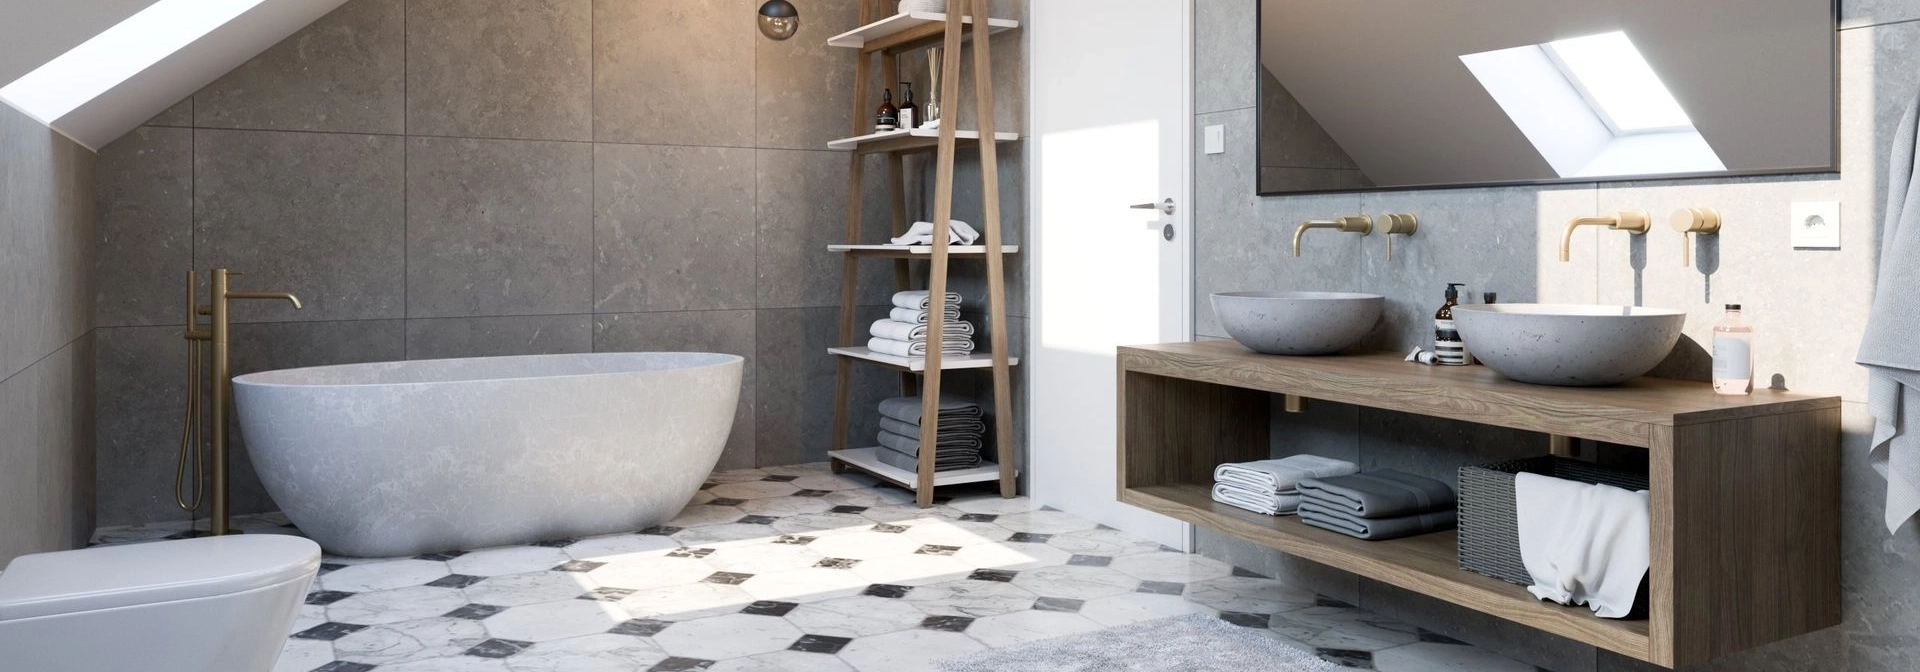 Helles Bad mit zwei Waschbecken aus Beton in der Farbe Grau